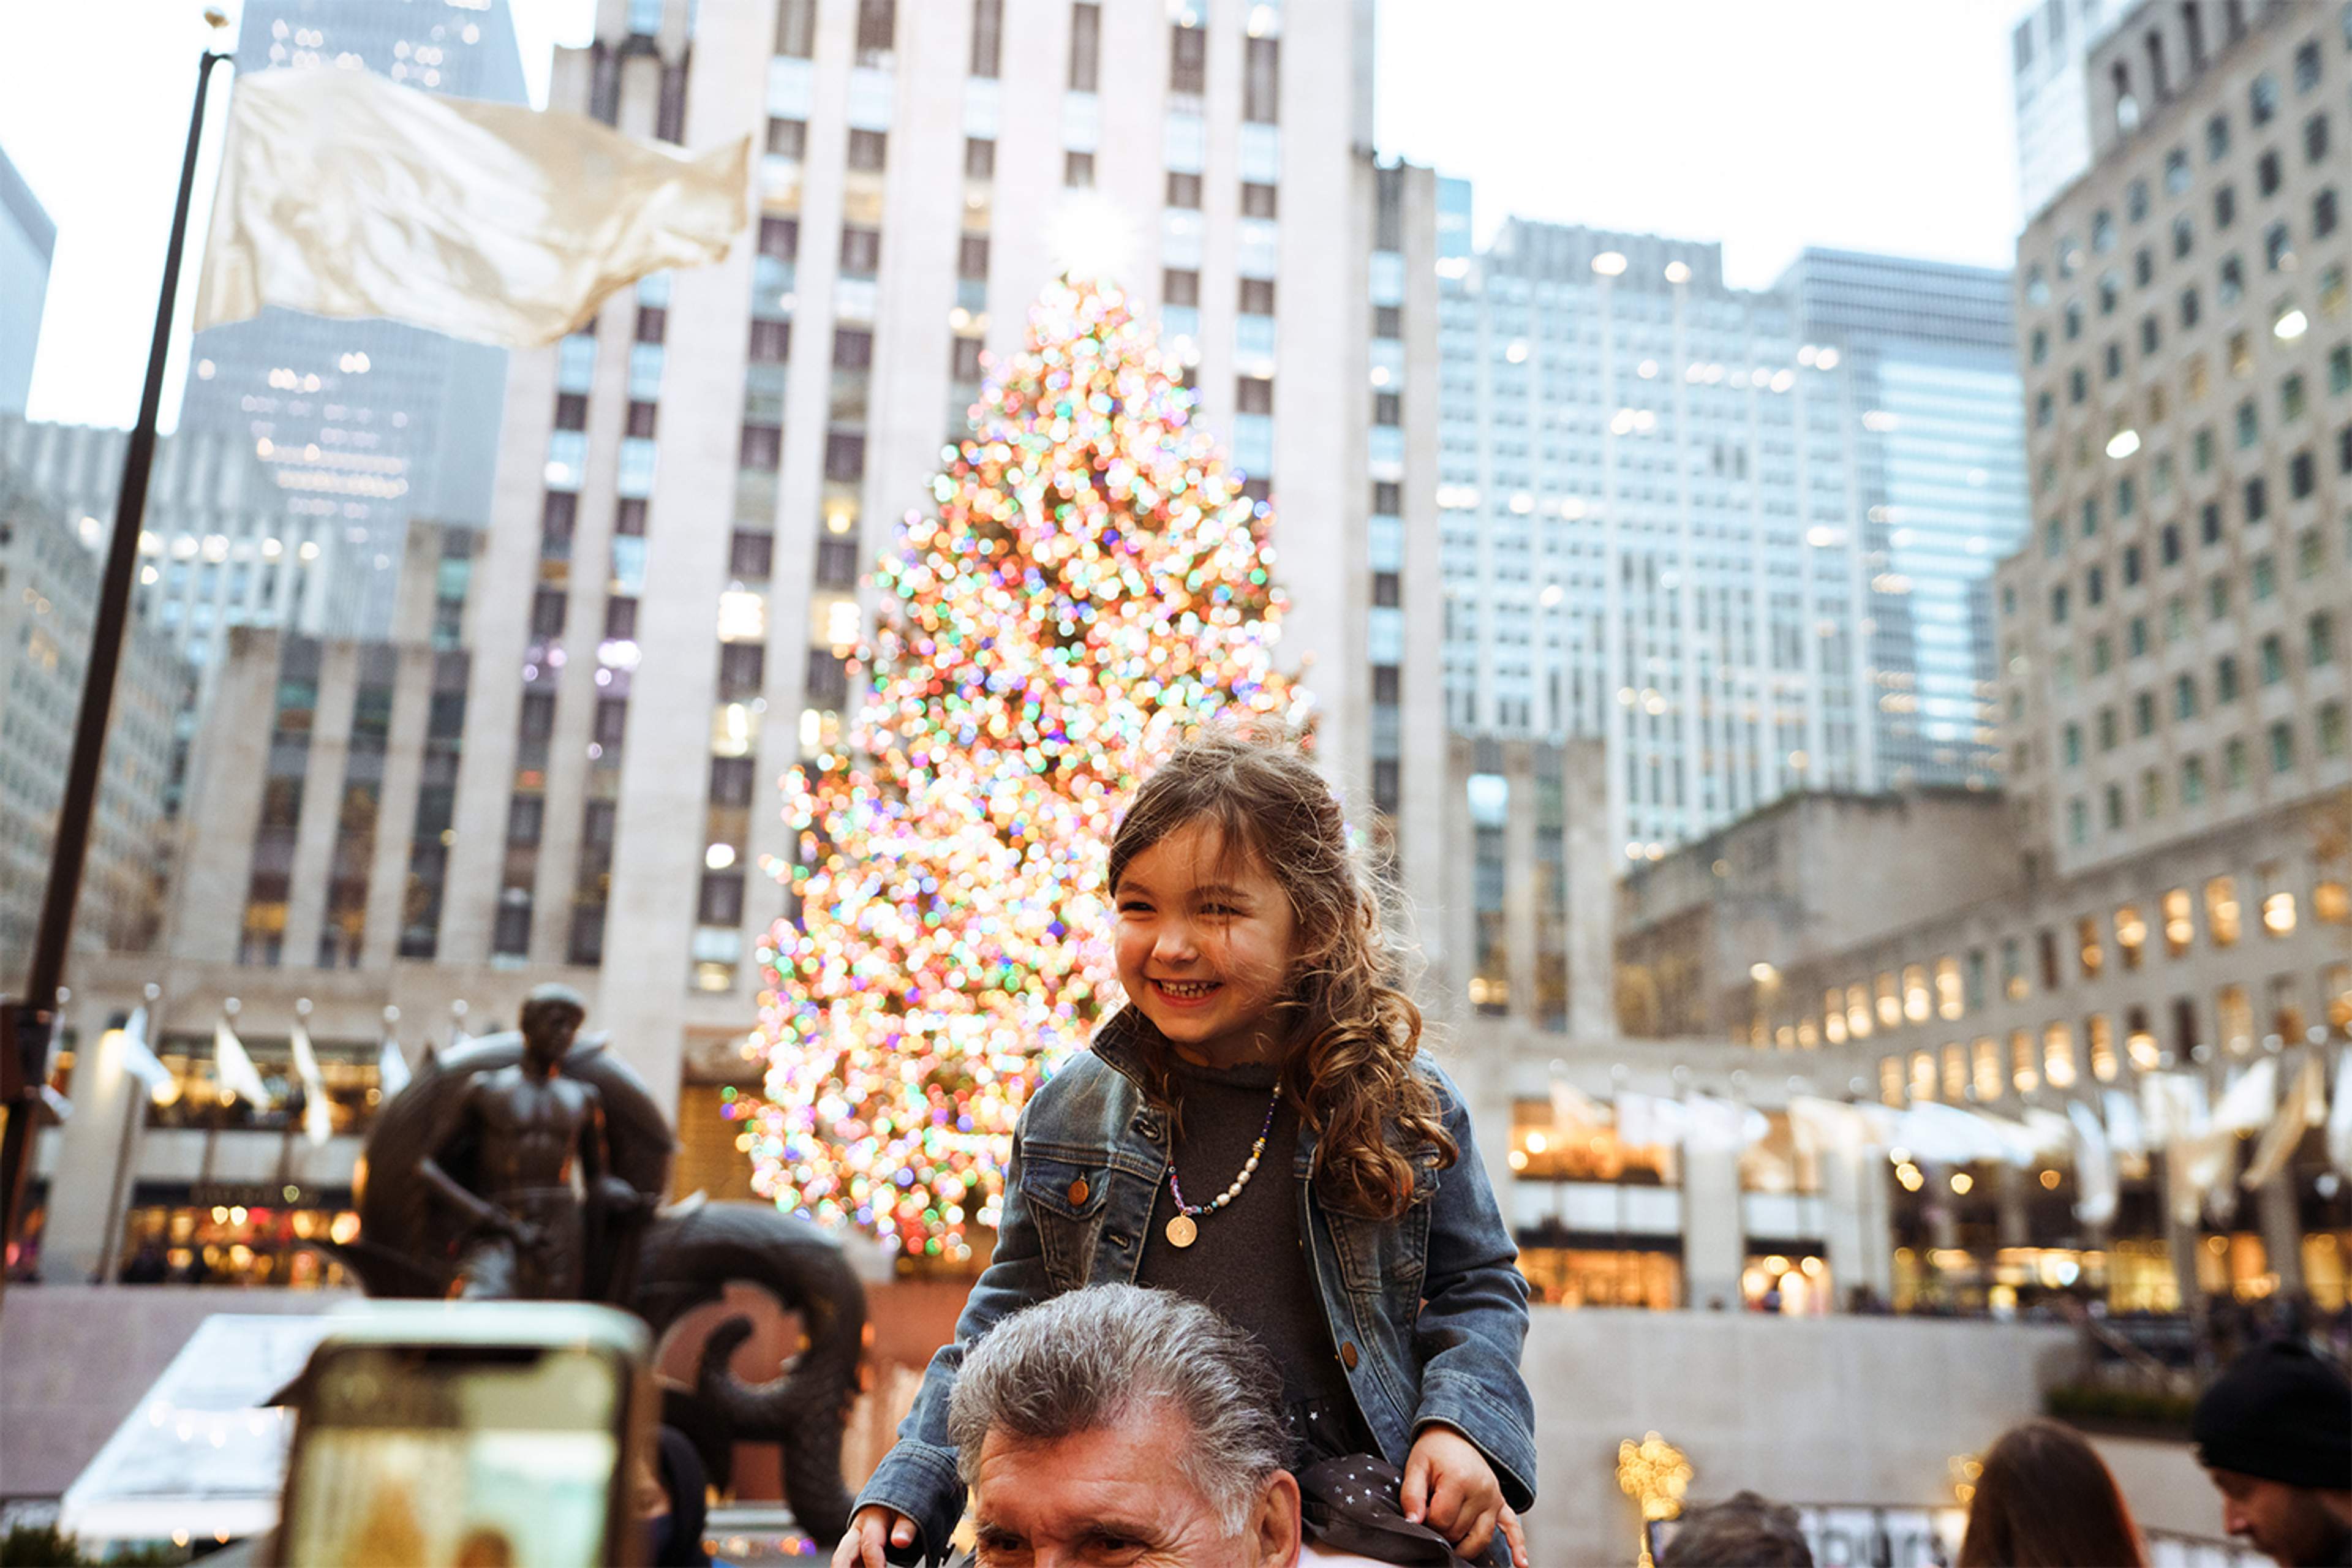 The Rockefeller Center Holiday Spirit